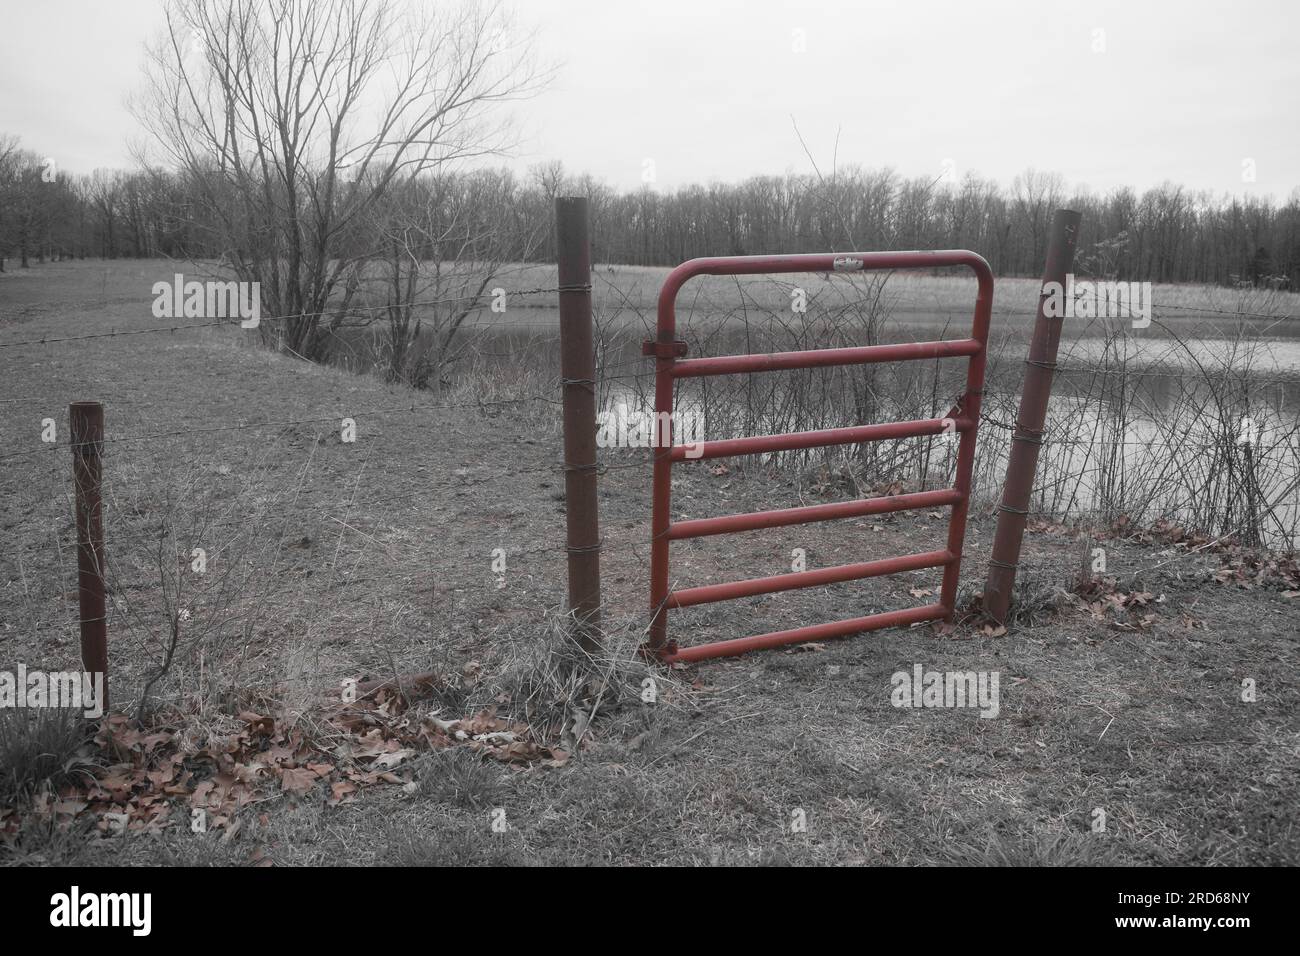 Ein geschlossenes Metalltor, das die Grenze zwischen dem Hof und dem Feld markiert, auf dem sich der Fischteich befindet. Gedeckte Farbe mit hervorgehobenem rotem Anschnitt. Stockfoto